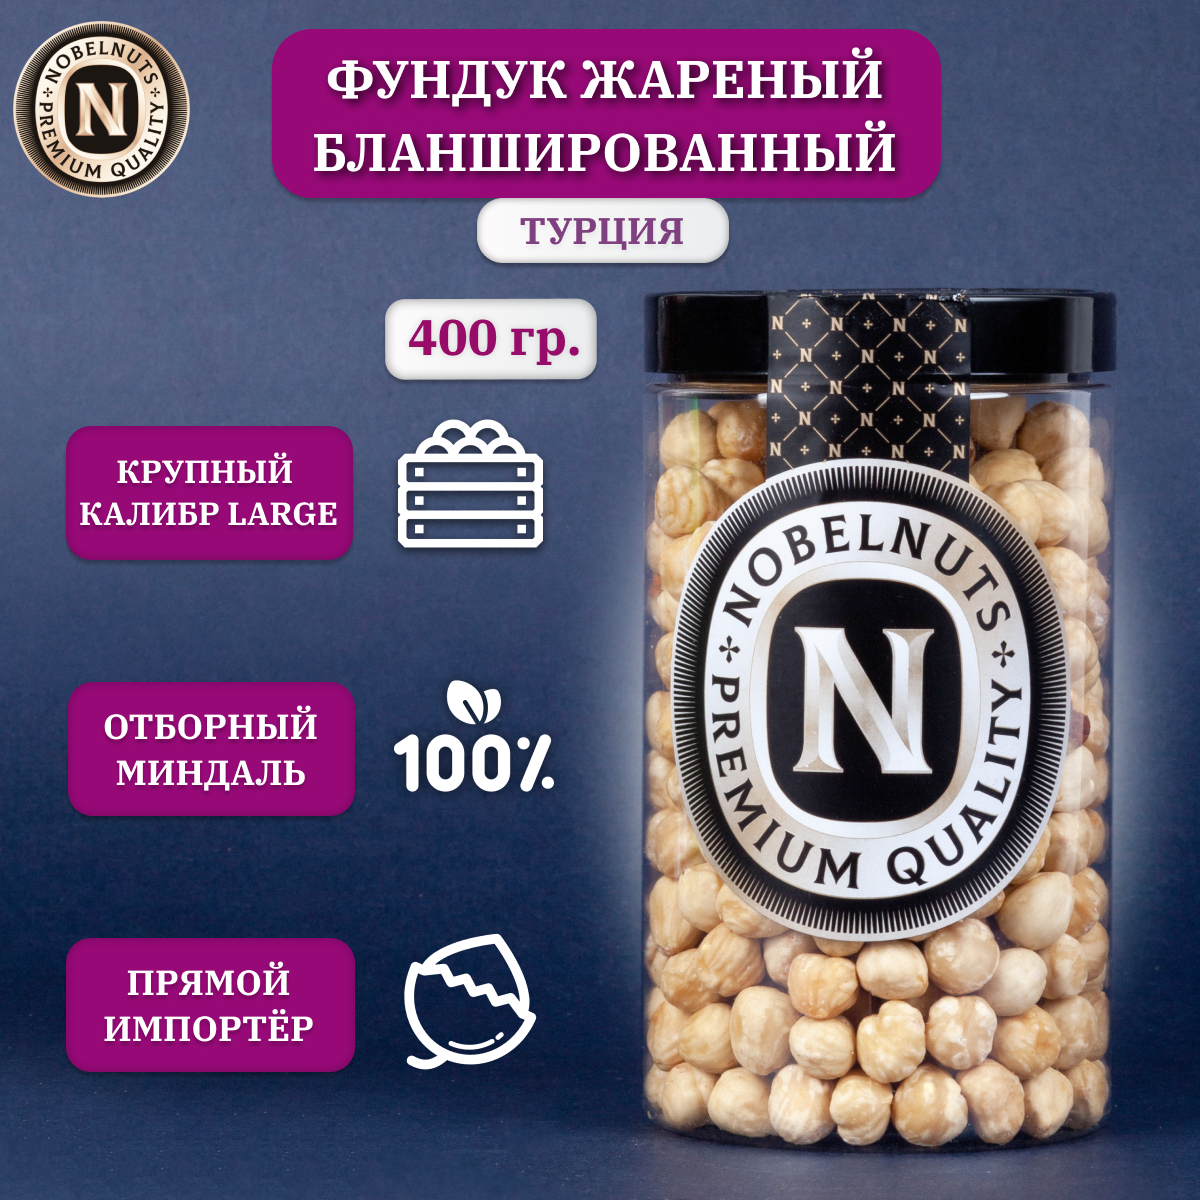 Фундук жареный бланшированный NOBELNUTS, ядра, Турция, в банке 400 гр.